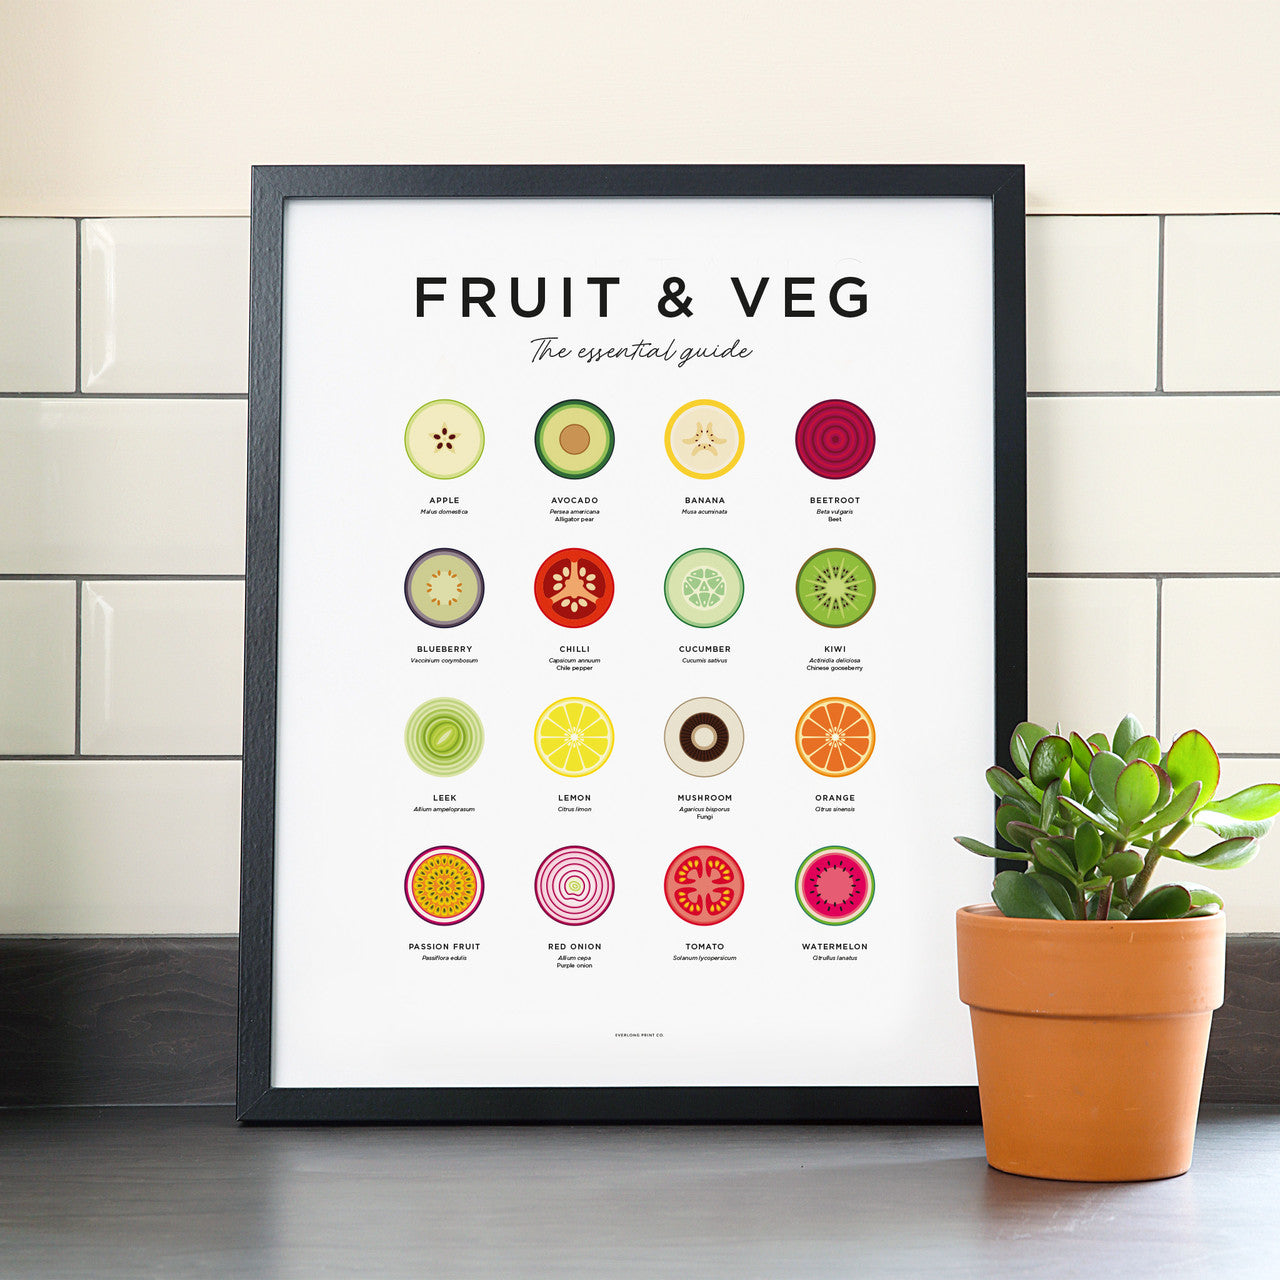 Fruit & Veg Print - Framed by Everlong Print Co.